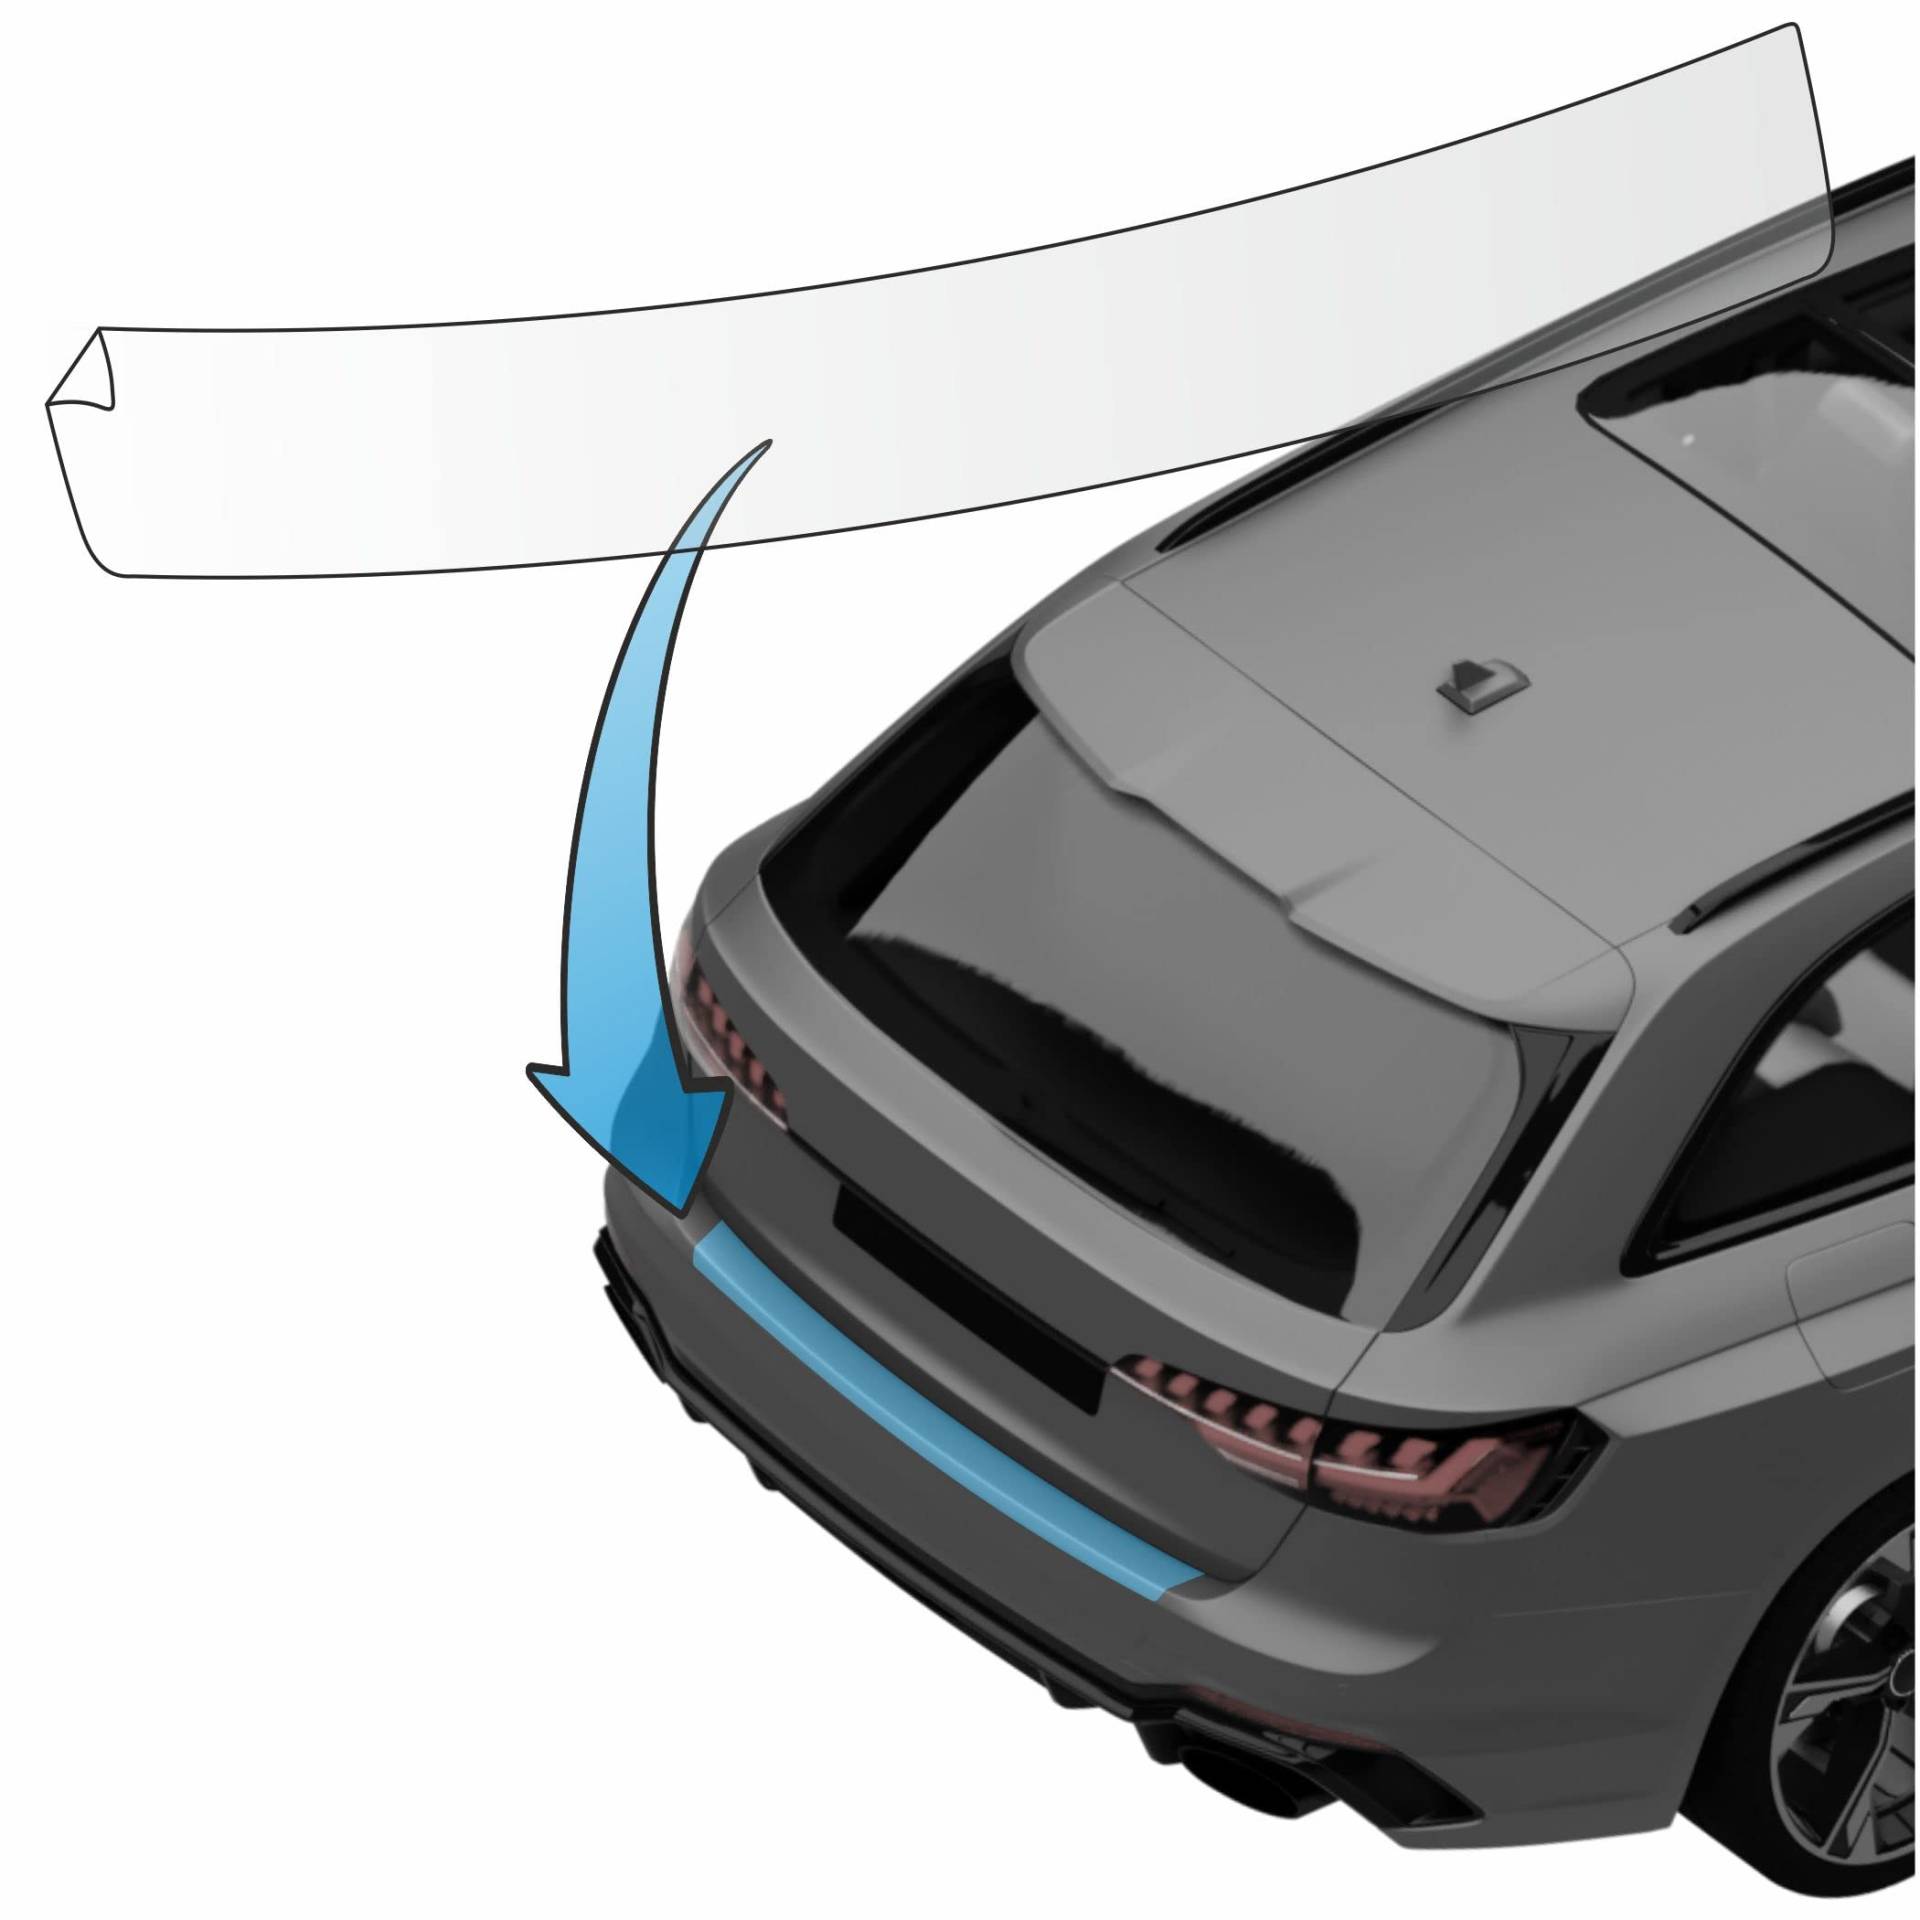 MisterLacky – Lackschutzfolie mit Rakel als Ladekantenschutz Folie passend für Renault Megane Coupe (III) BJ 2009-2016 in transparent (150µm) von Lackschutzshop